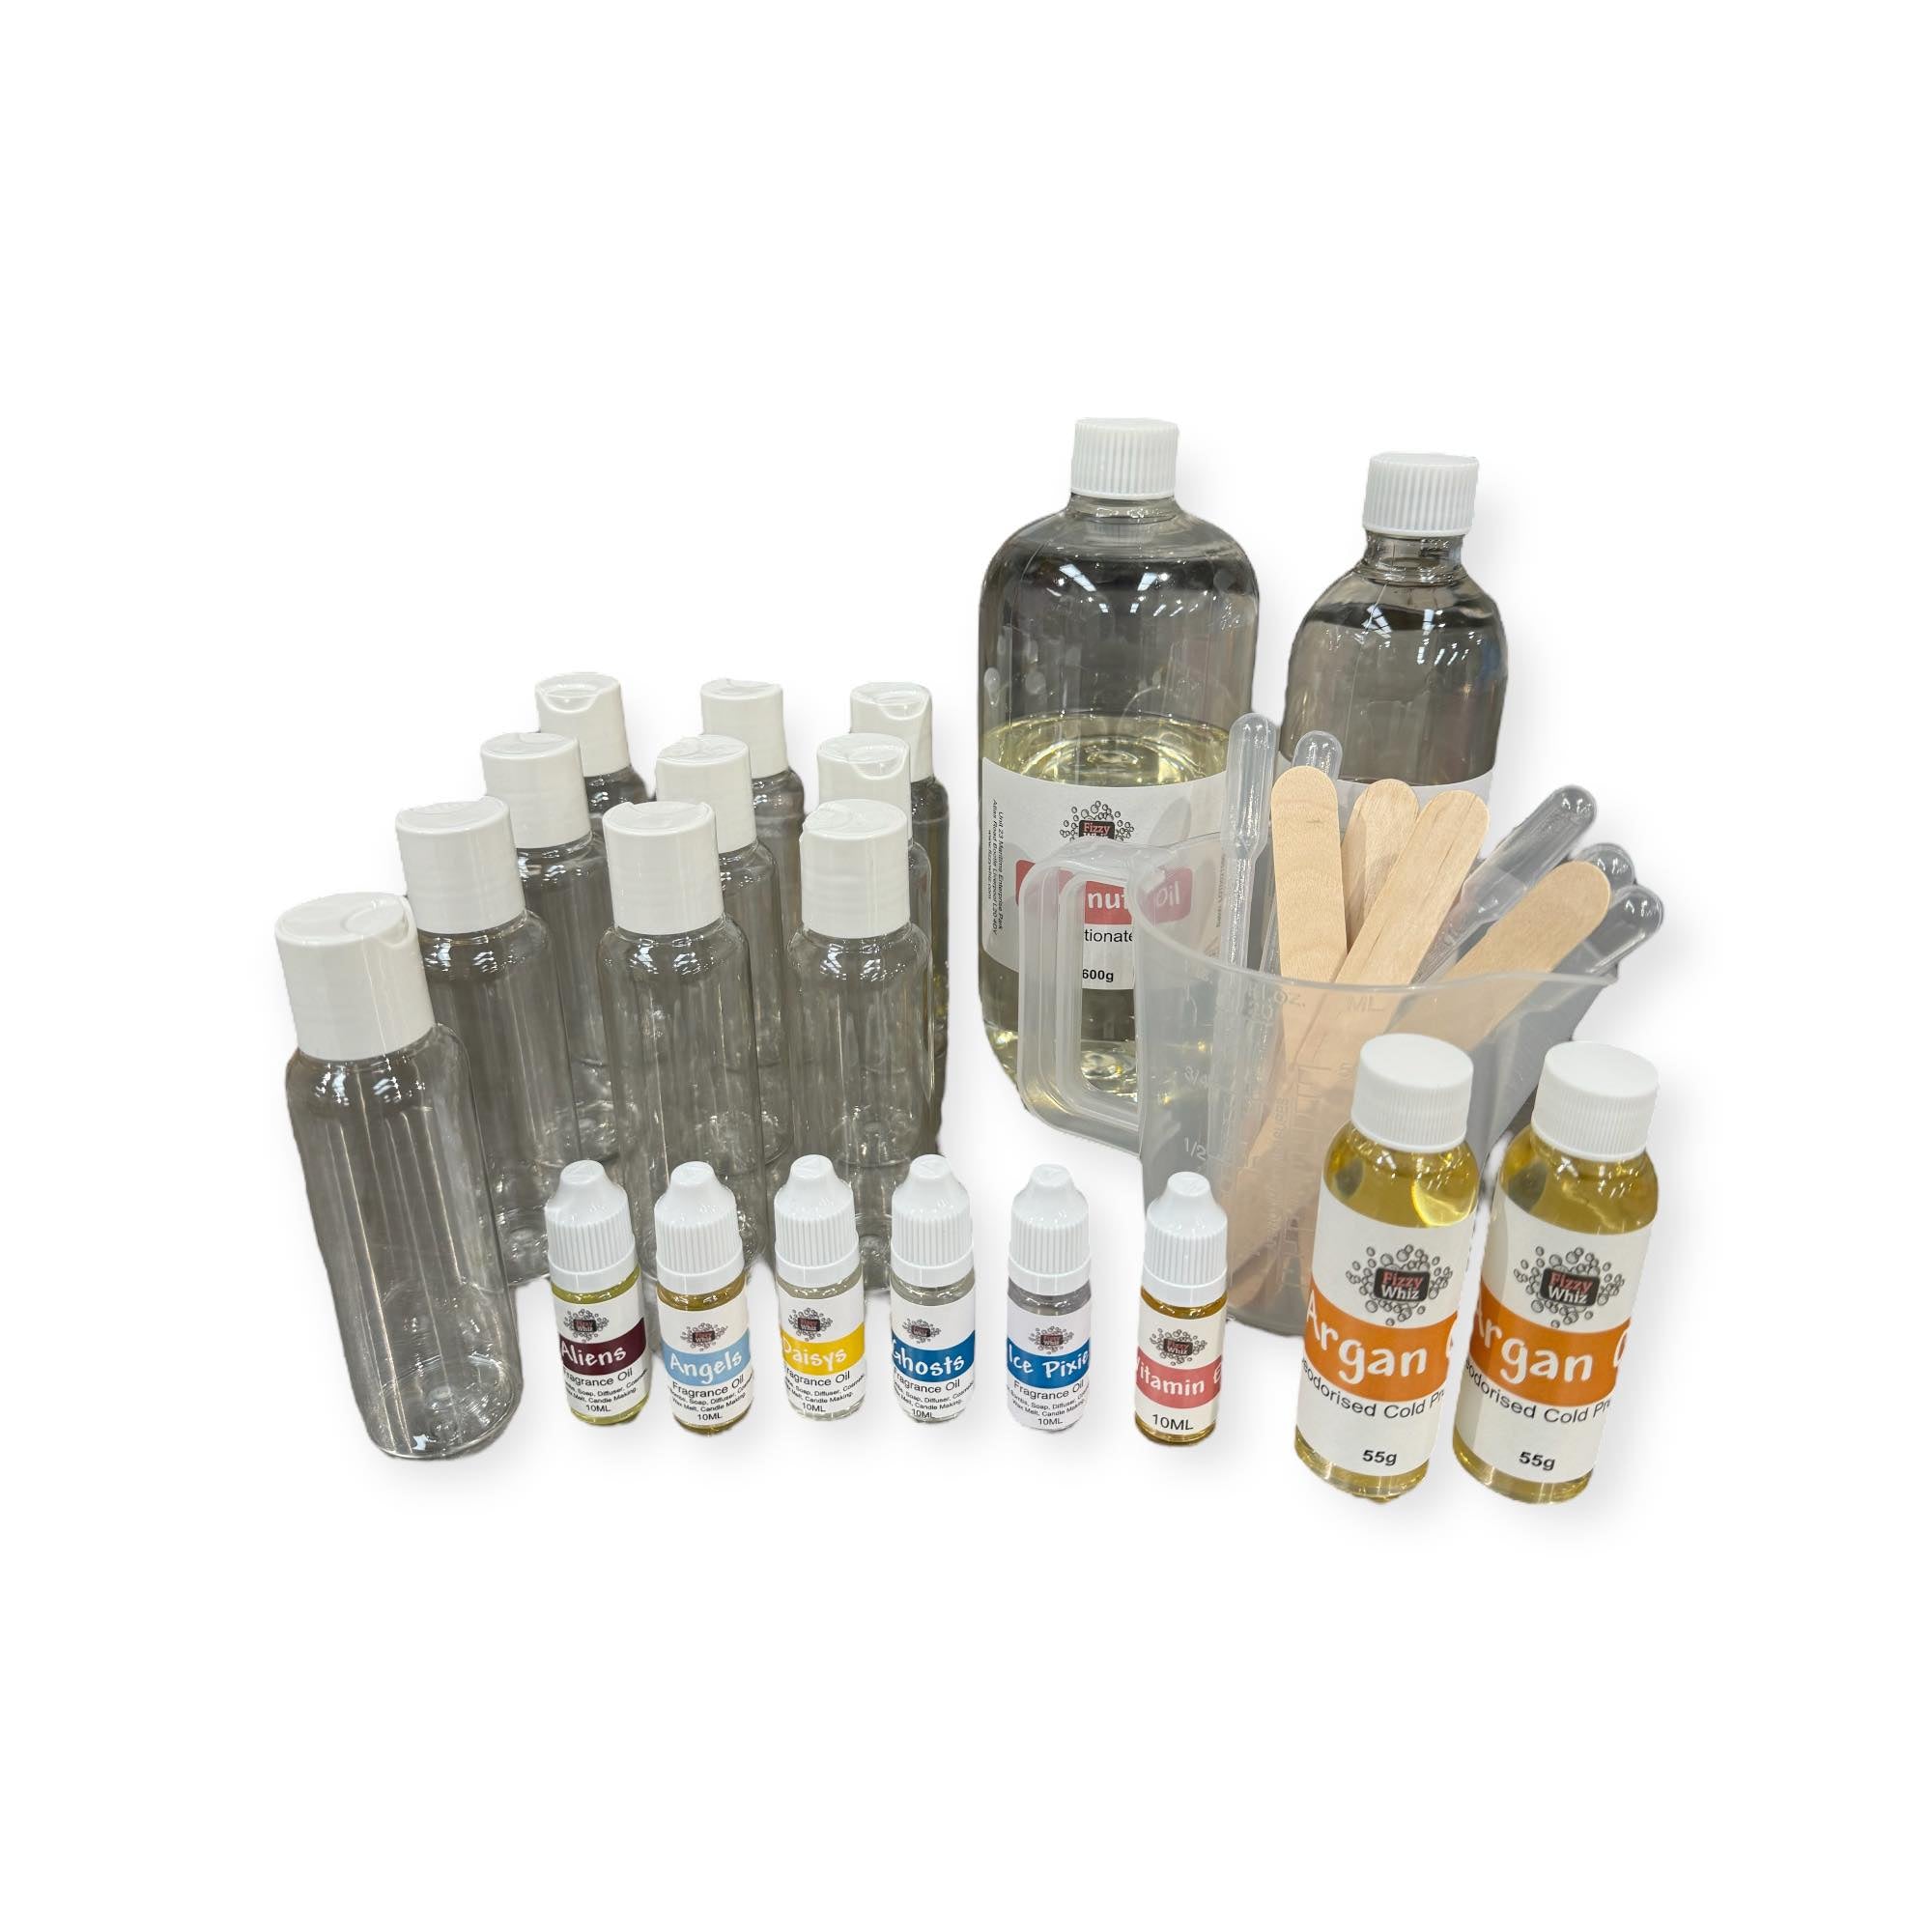 Body Oil Kit Perfume Scents & Free Wellness Body Oil Assessment